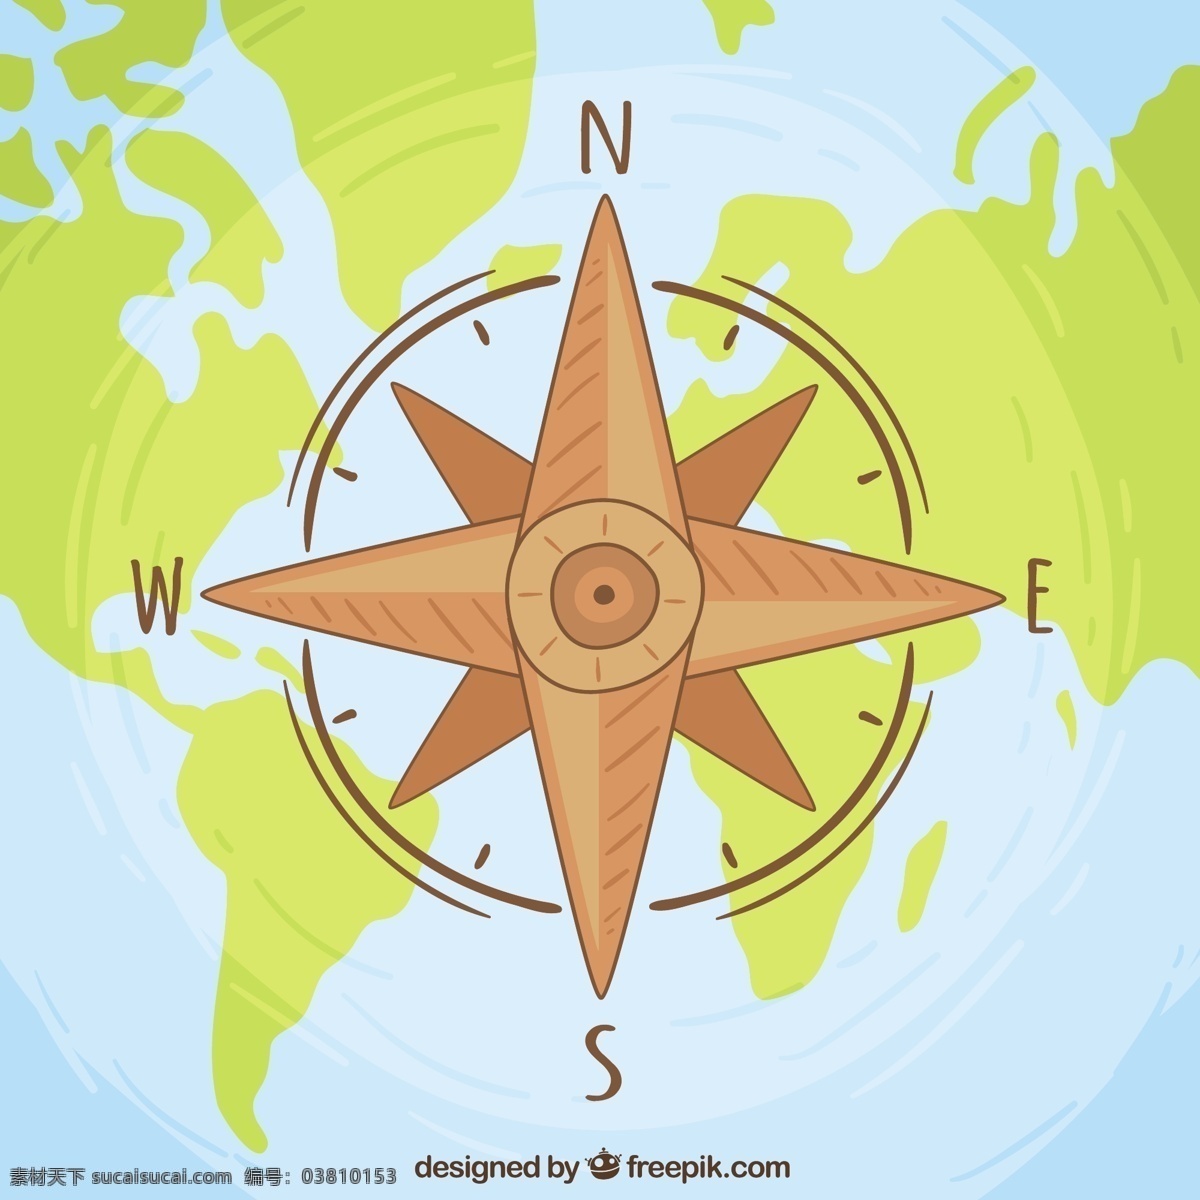 世界地图 背景 下 风 玫瑰 旅游 地图 世界 地球 壁纸 剪影 指南针 海洋 行星 非洲 度假 美国 欧洲 旅行